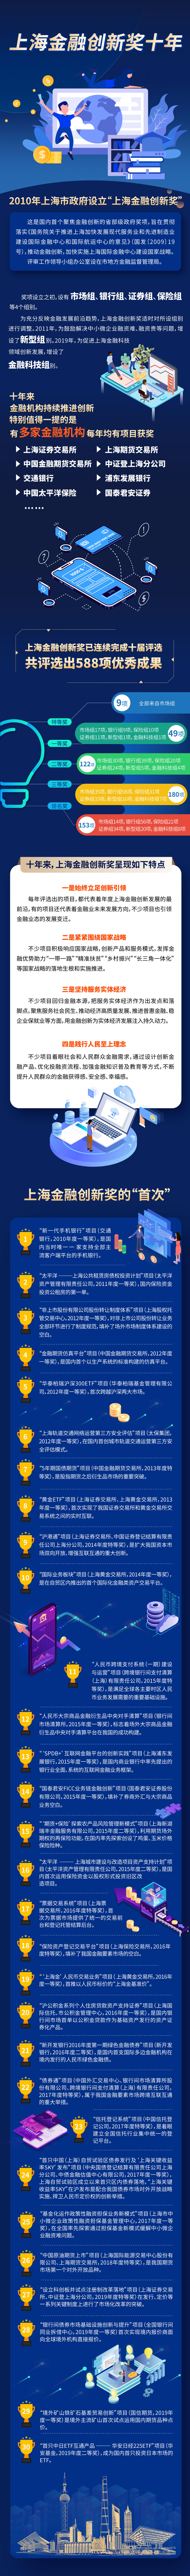 上海金融创新奖十年.jpg